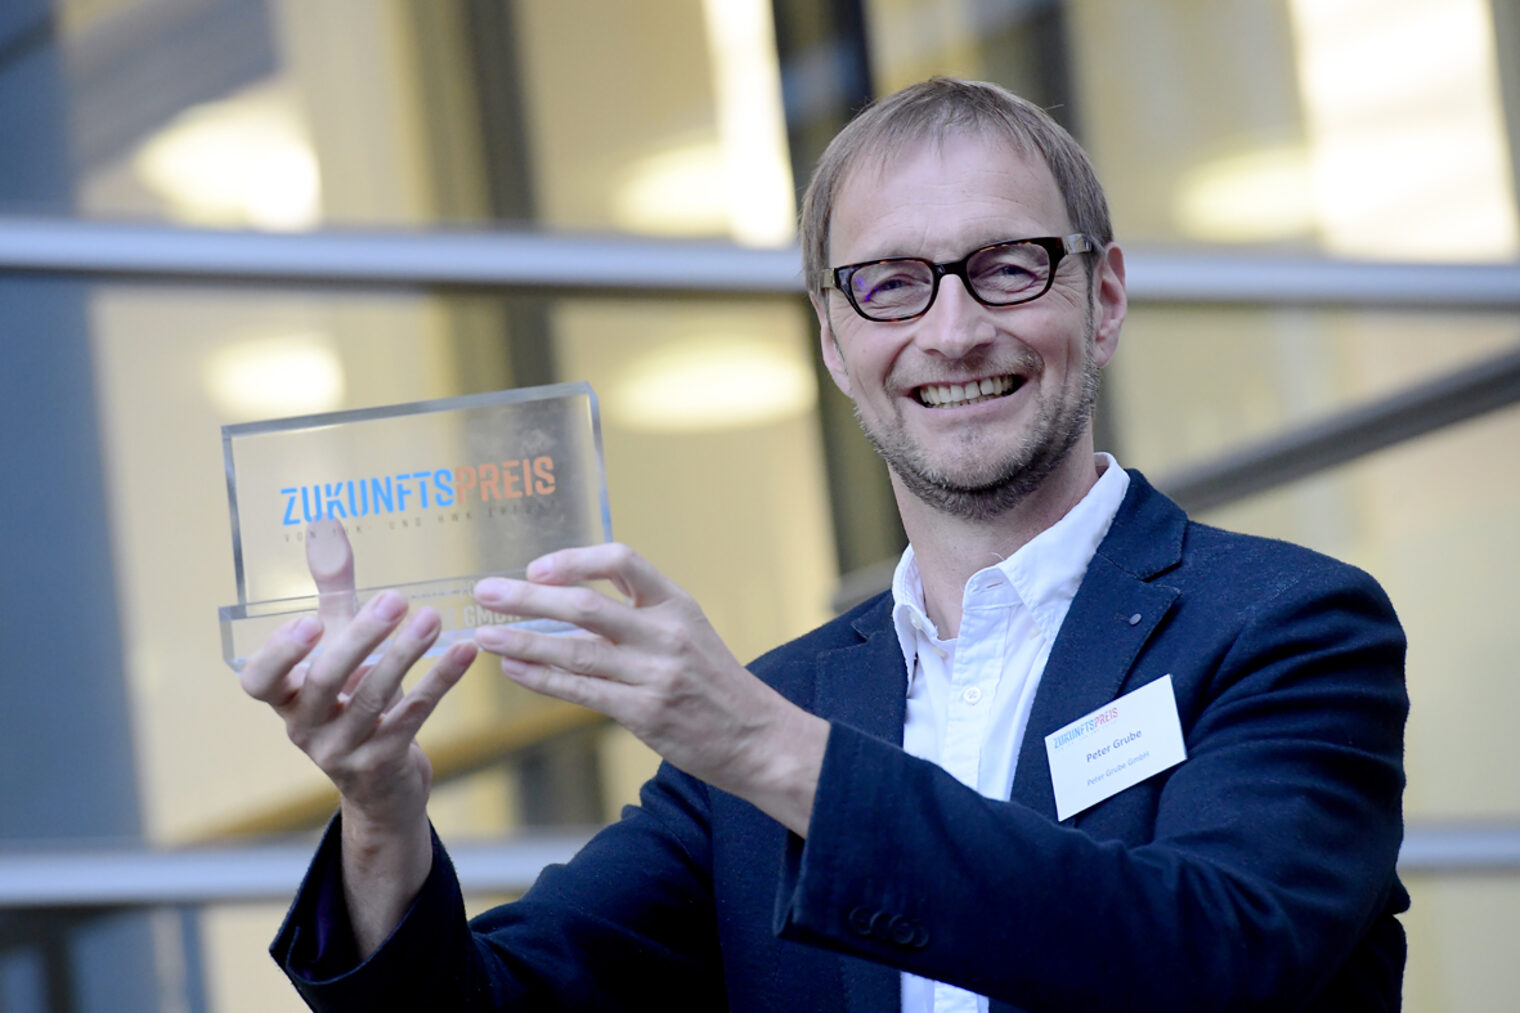 Der strahlende Gewinner des Zukunftspreises 2021 heißt Peter Grube, Tisch-lermeister aus Urbach.